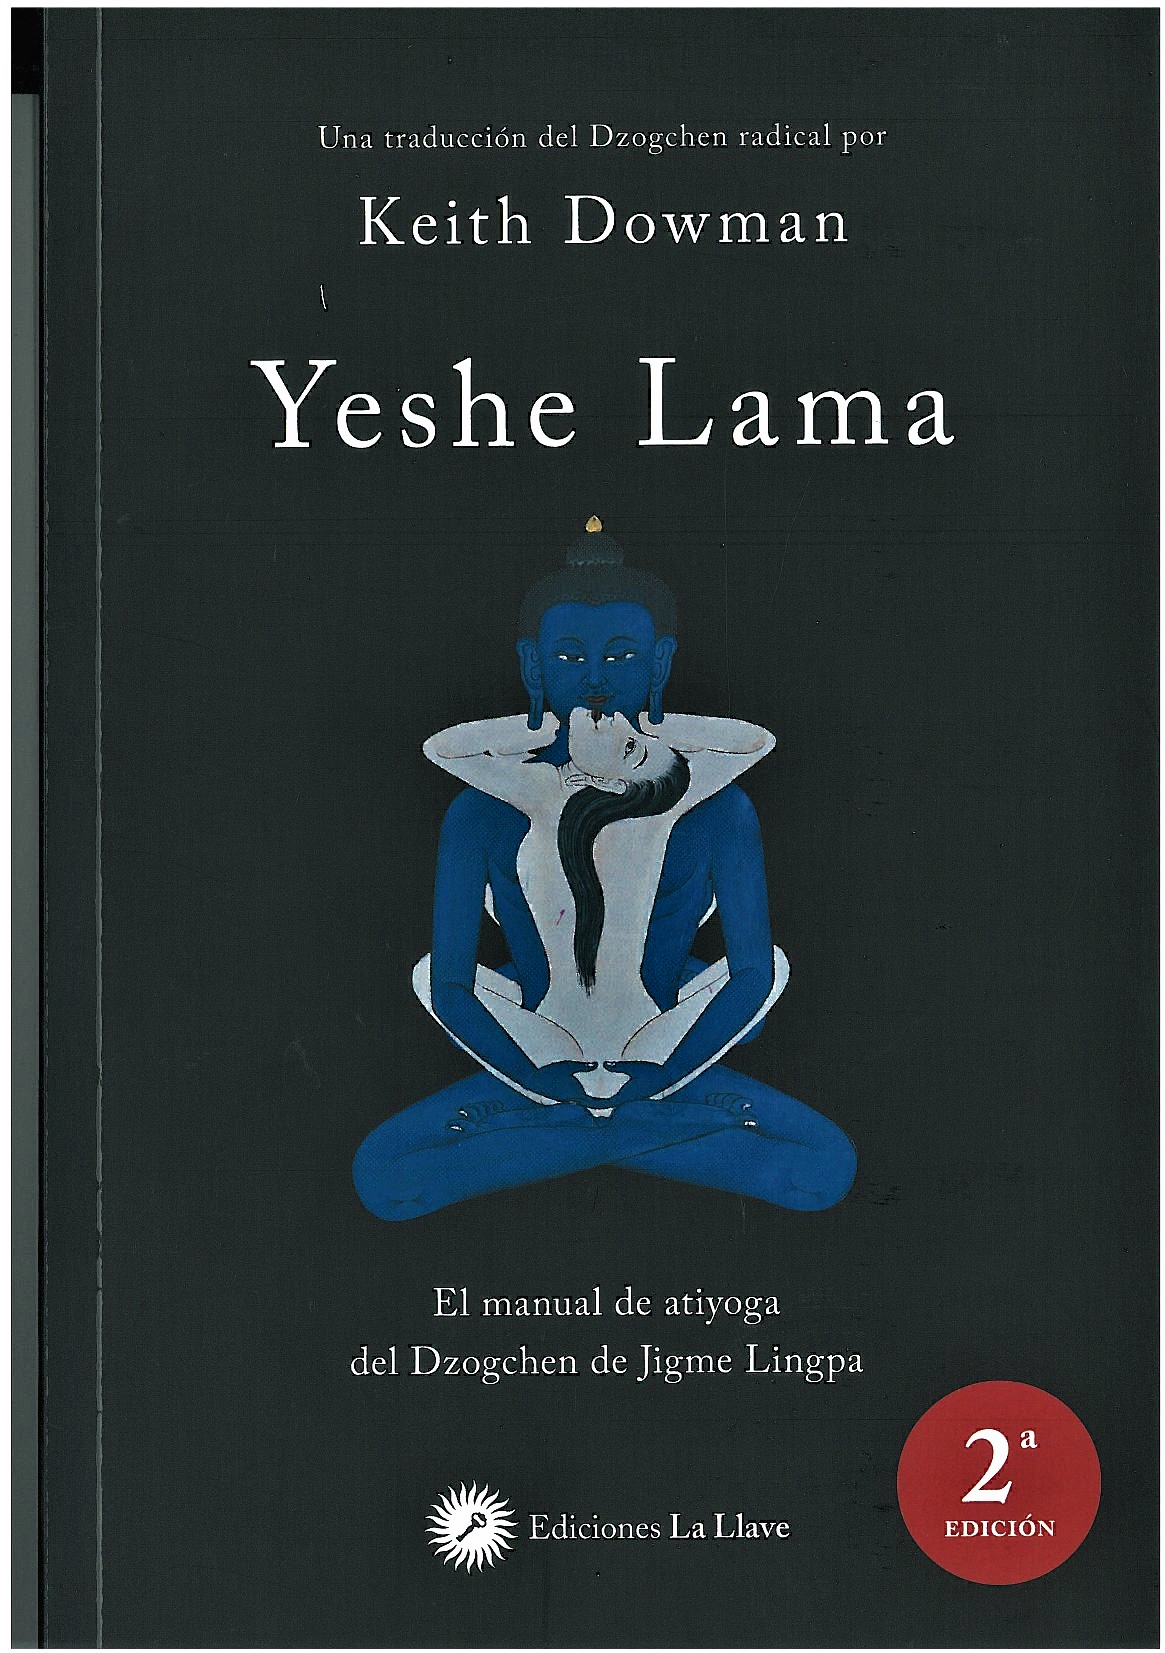 
            Yeshe lama